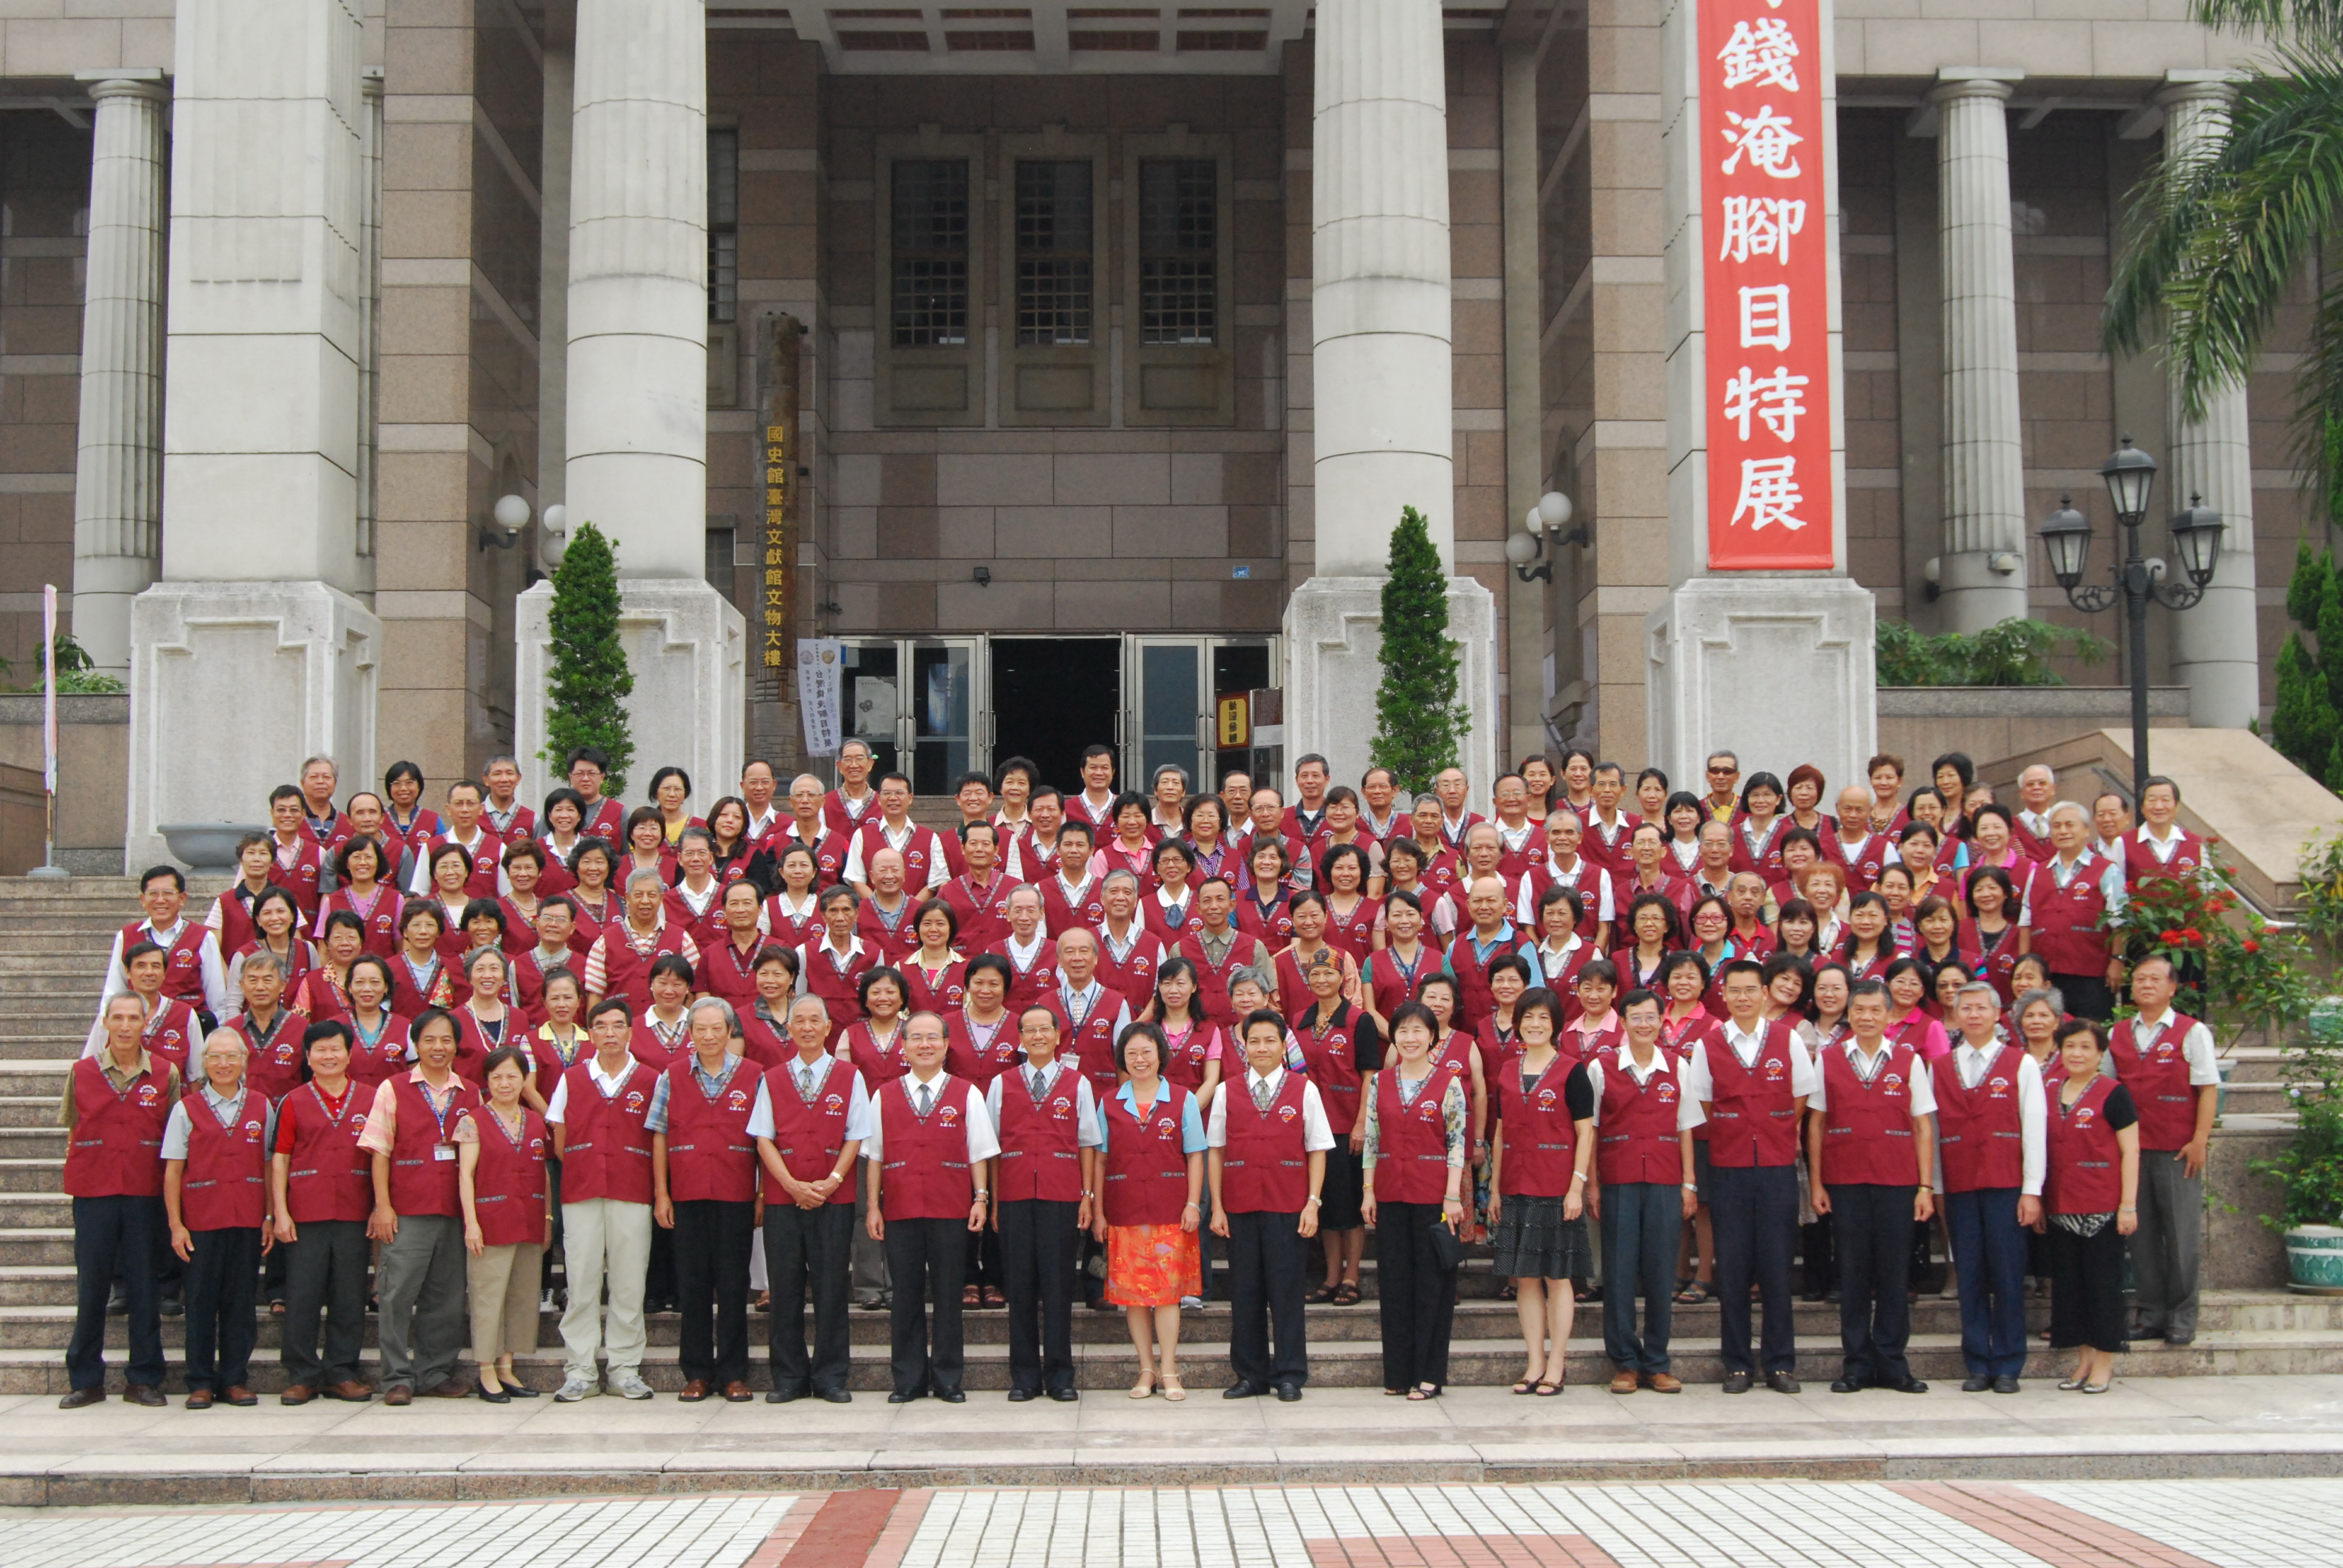 臺灣文獻館志工隊98年度第2次志工大會 